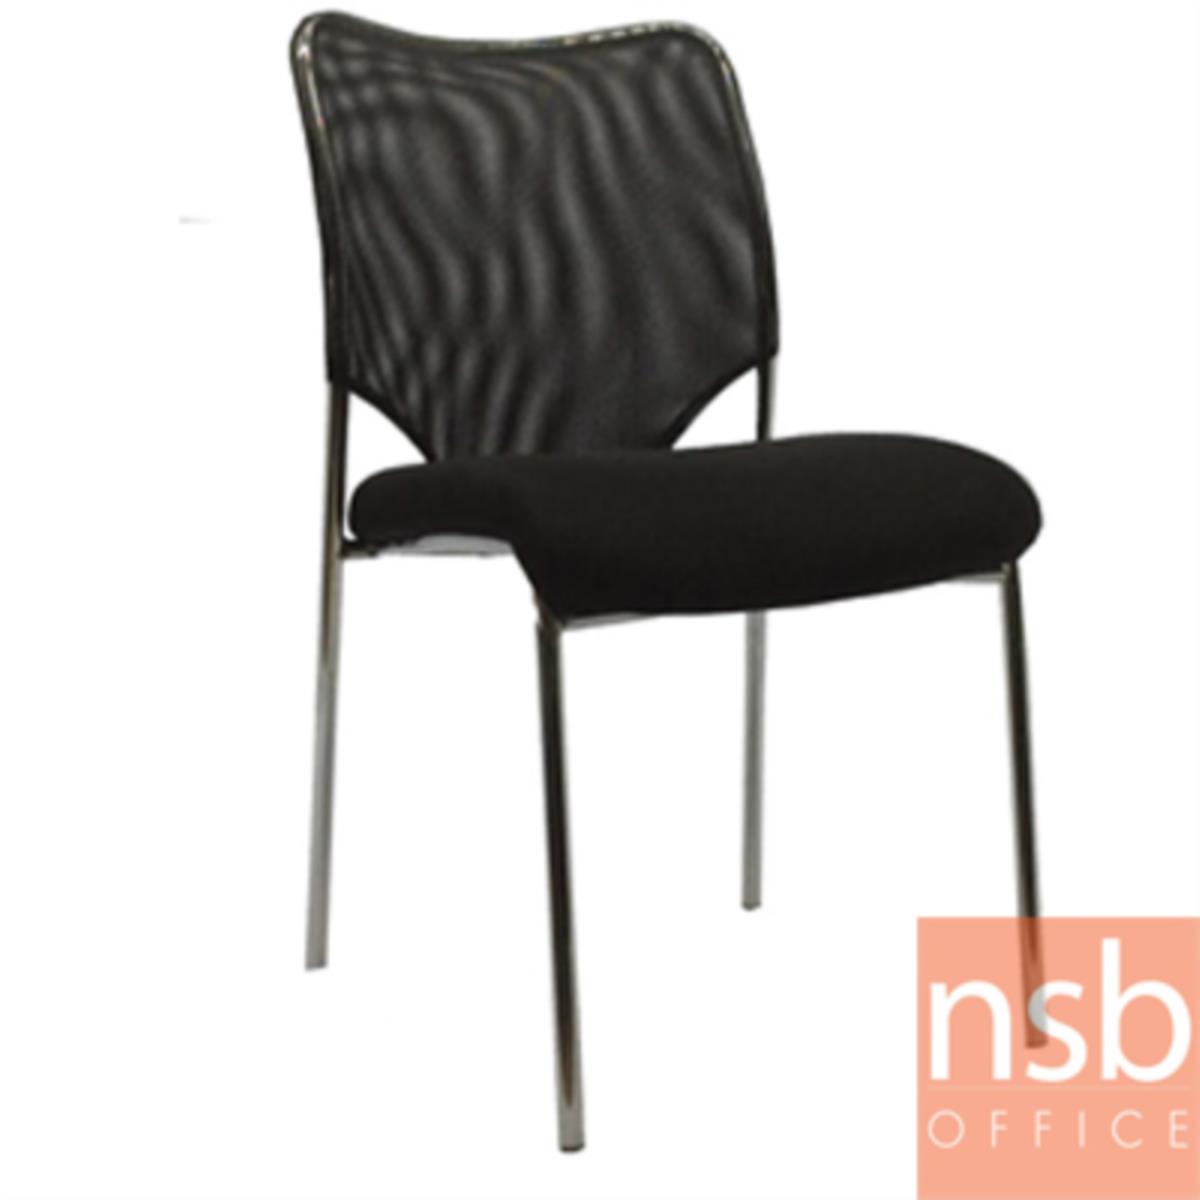 B05A015:เก้าอี้อเนกประสงค์ยูโร  ขนาด 85H cm.  ขาเหล็กชุบโครเมี่ยม